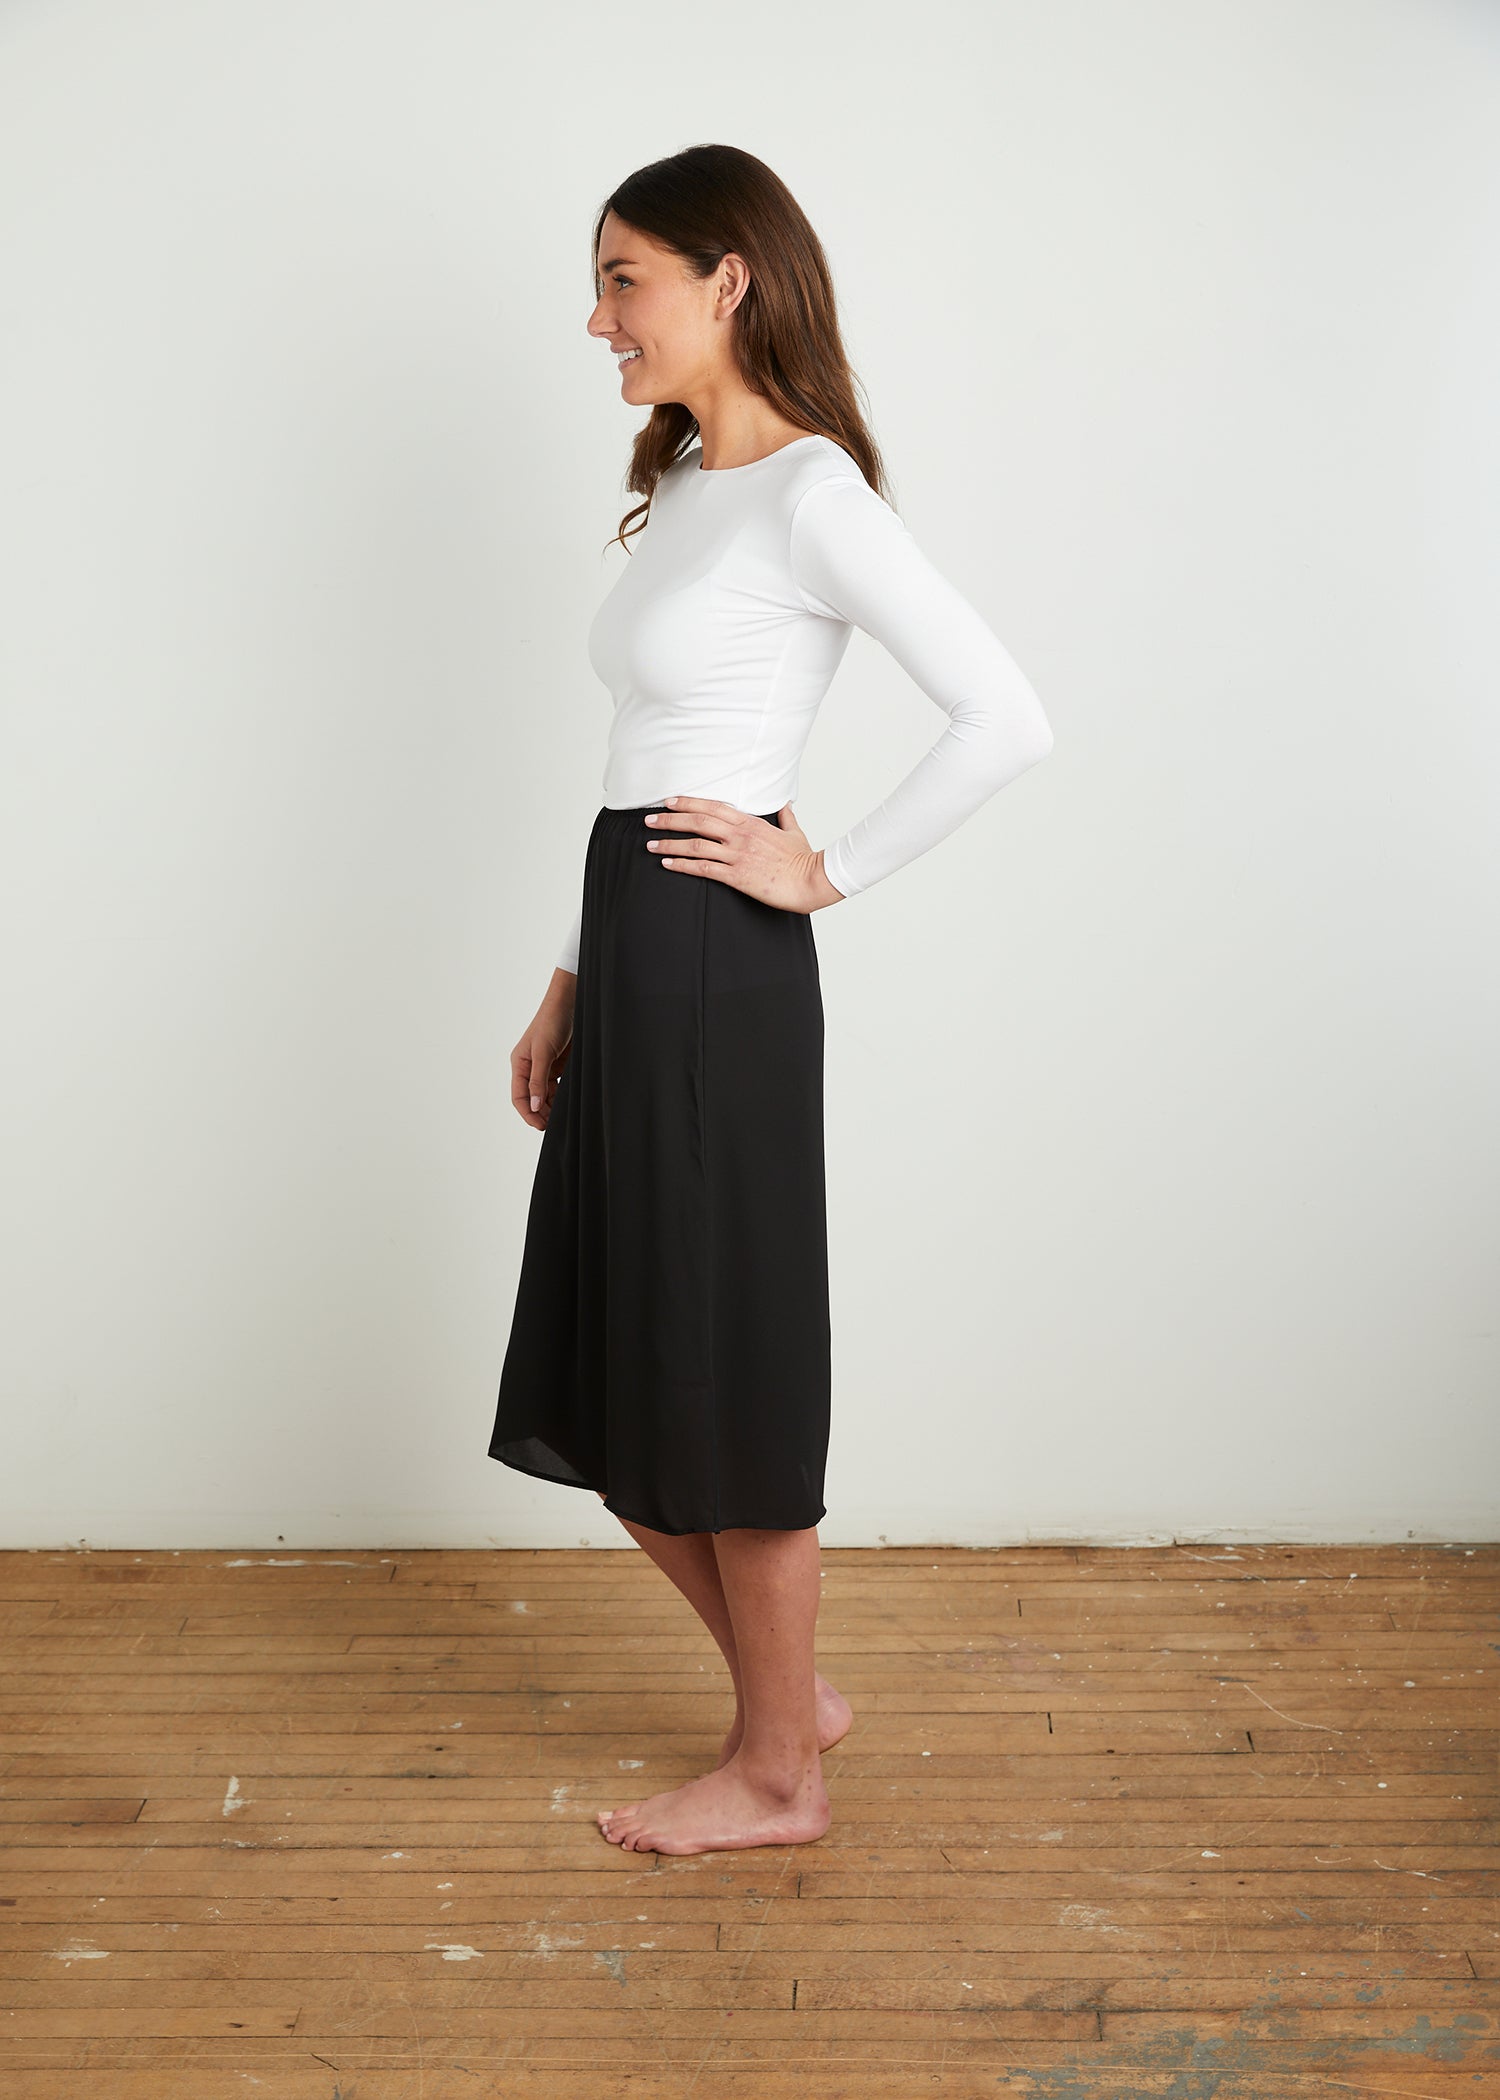 Extender slip to make short dress modest